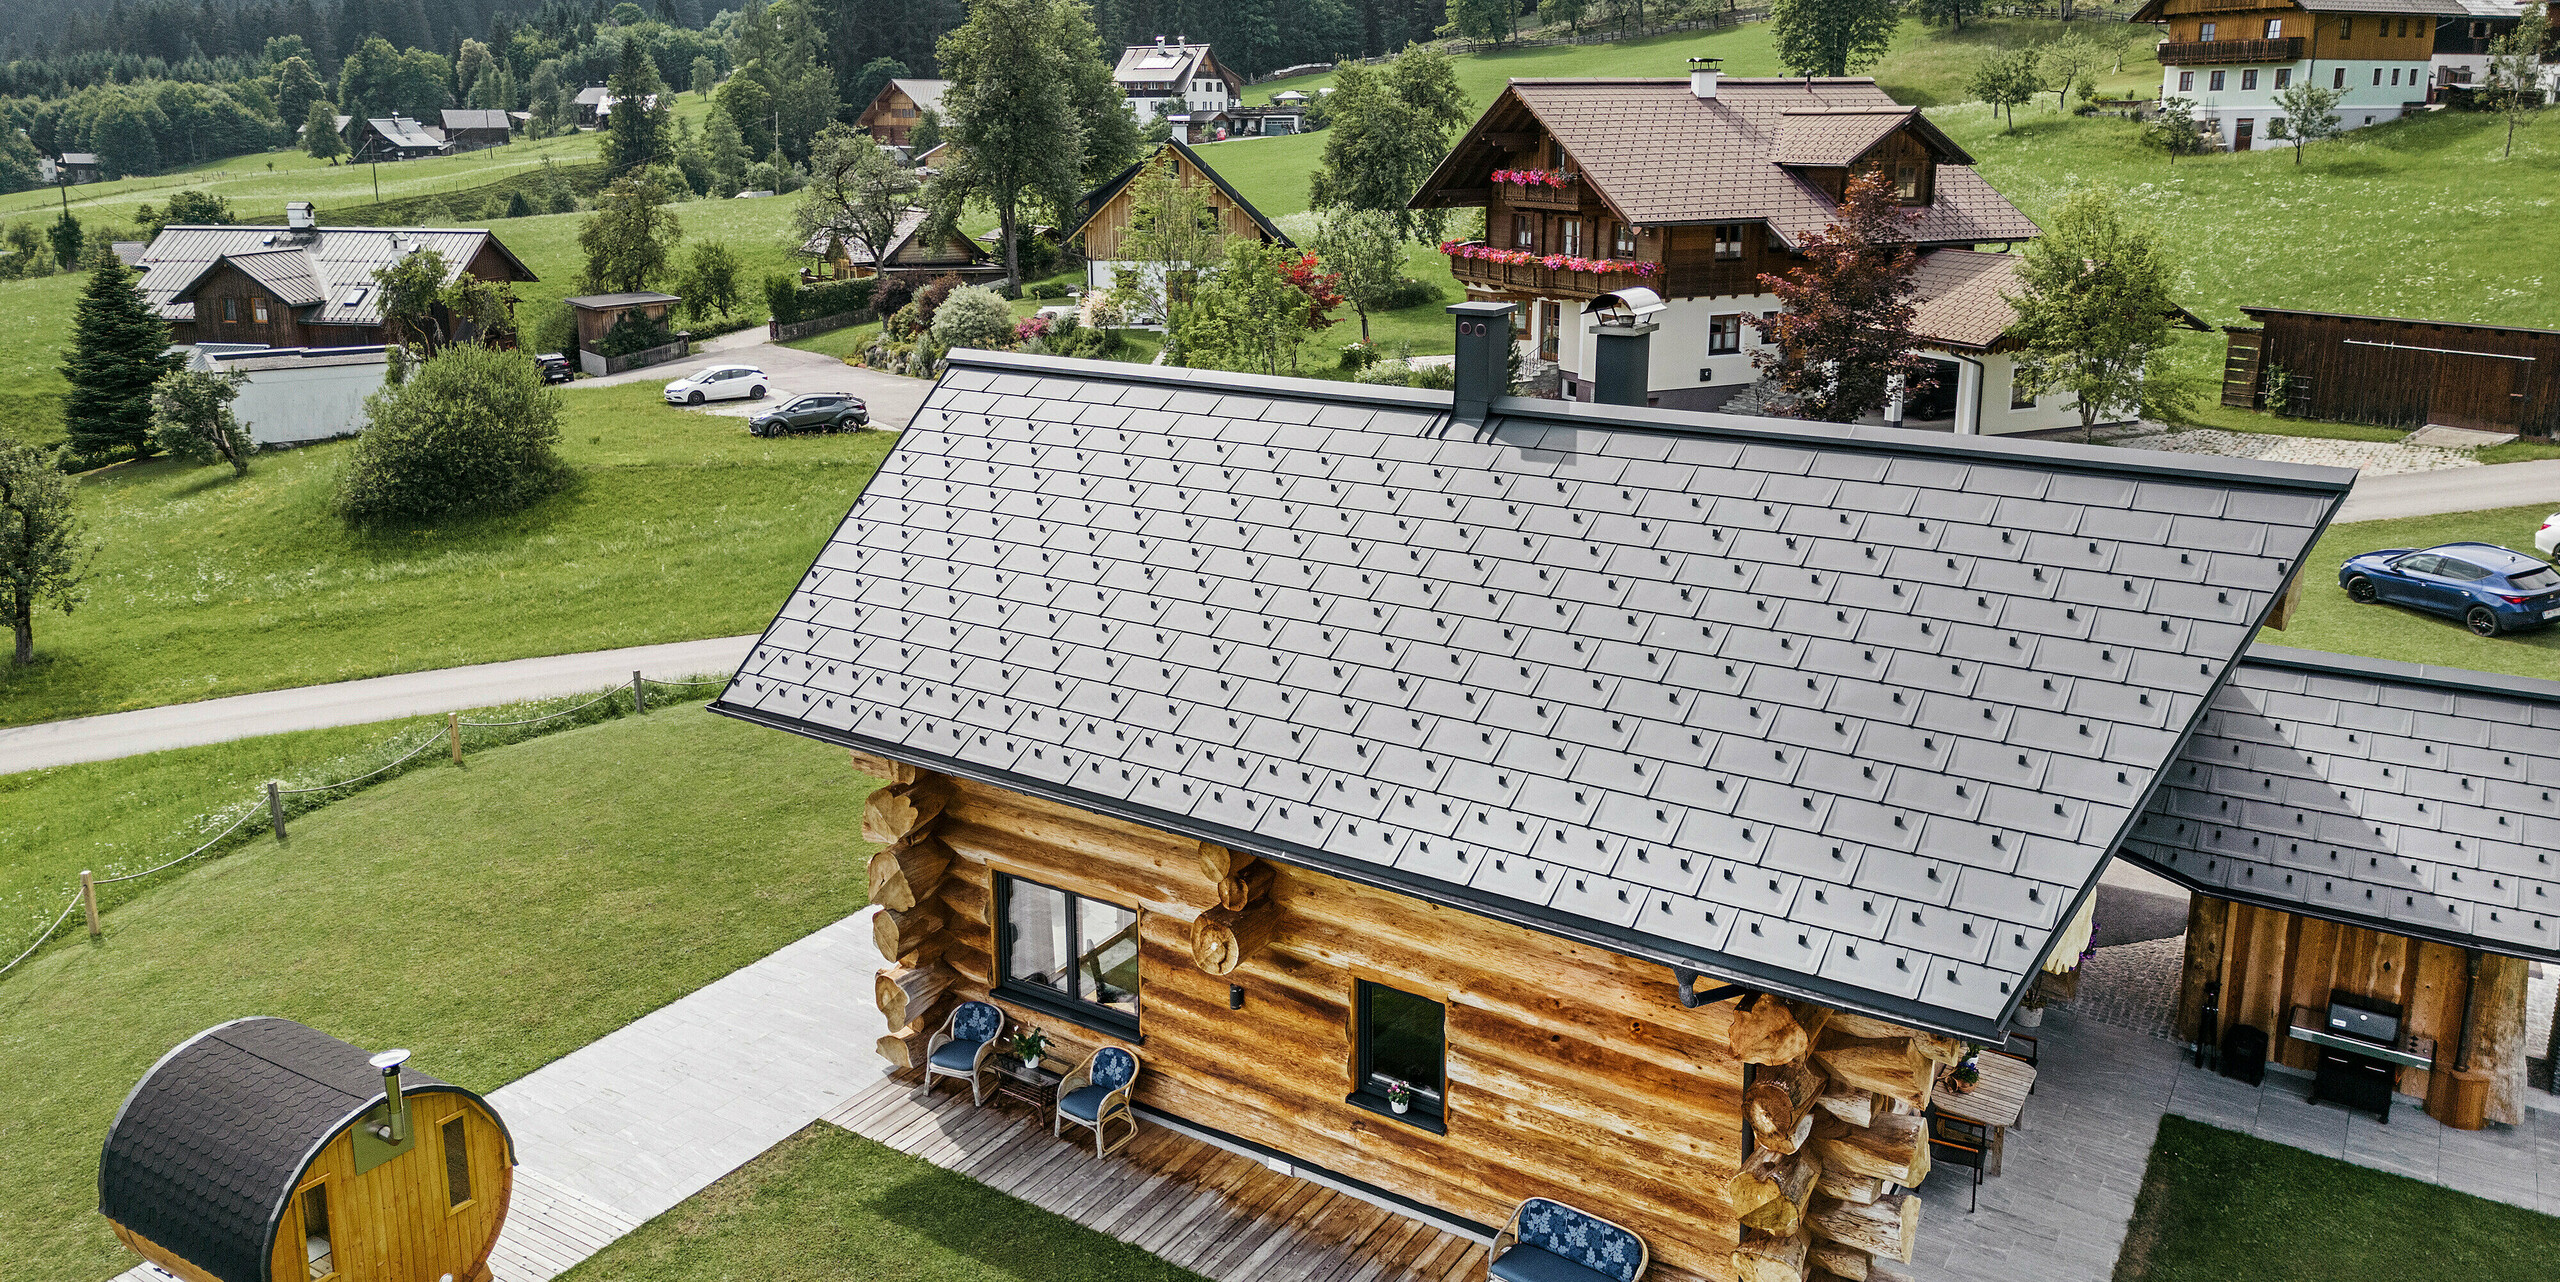 Pogled iz ptičje perspektive na rustikalno brunarico v kraju Gosau v Avstriji z visokokakovostno aluminijasto PREFA streho iz strešnih plošč R.16 v P.10 antracitni barvi. Streha kaže značilno strukturo in natančnost PREFA strešnih sistemov, ki se odlično ujemajo s podeželskim okoljem. Bujno zelenje travnikov, okoliške tradicionalne hiše in gozdnati griči v ozadju tvorijo naravni kontrast modernim strešnim elementom v antracitni barvi, ki v alpsko arhitekturo vnašajo trajnost in sodobno estetiko.